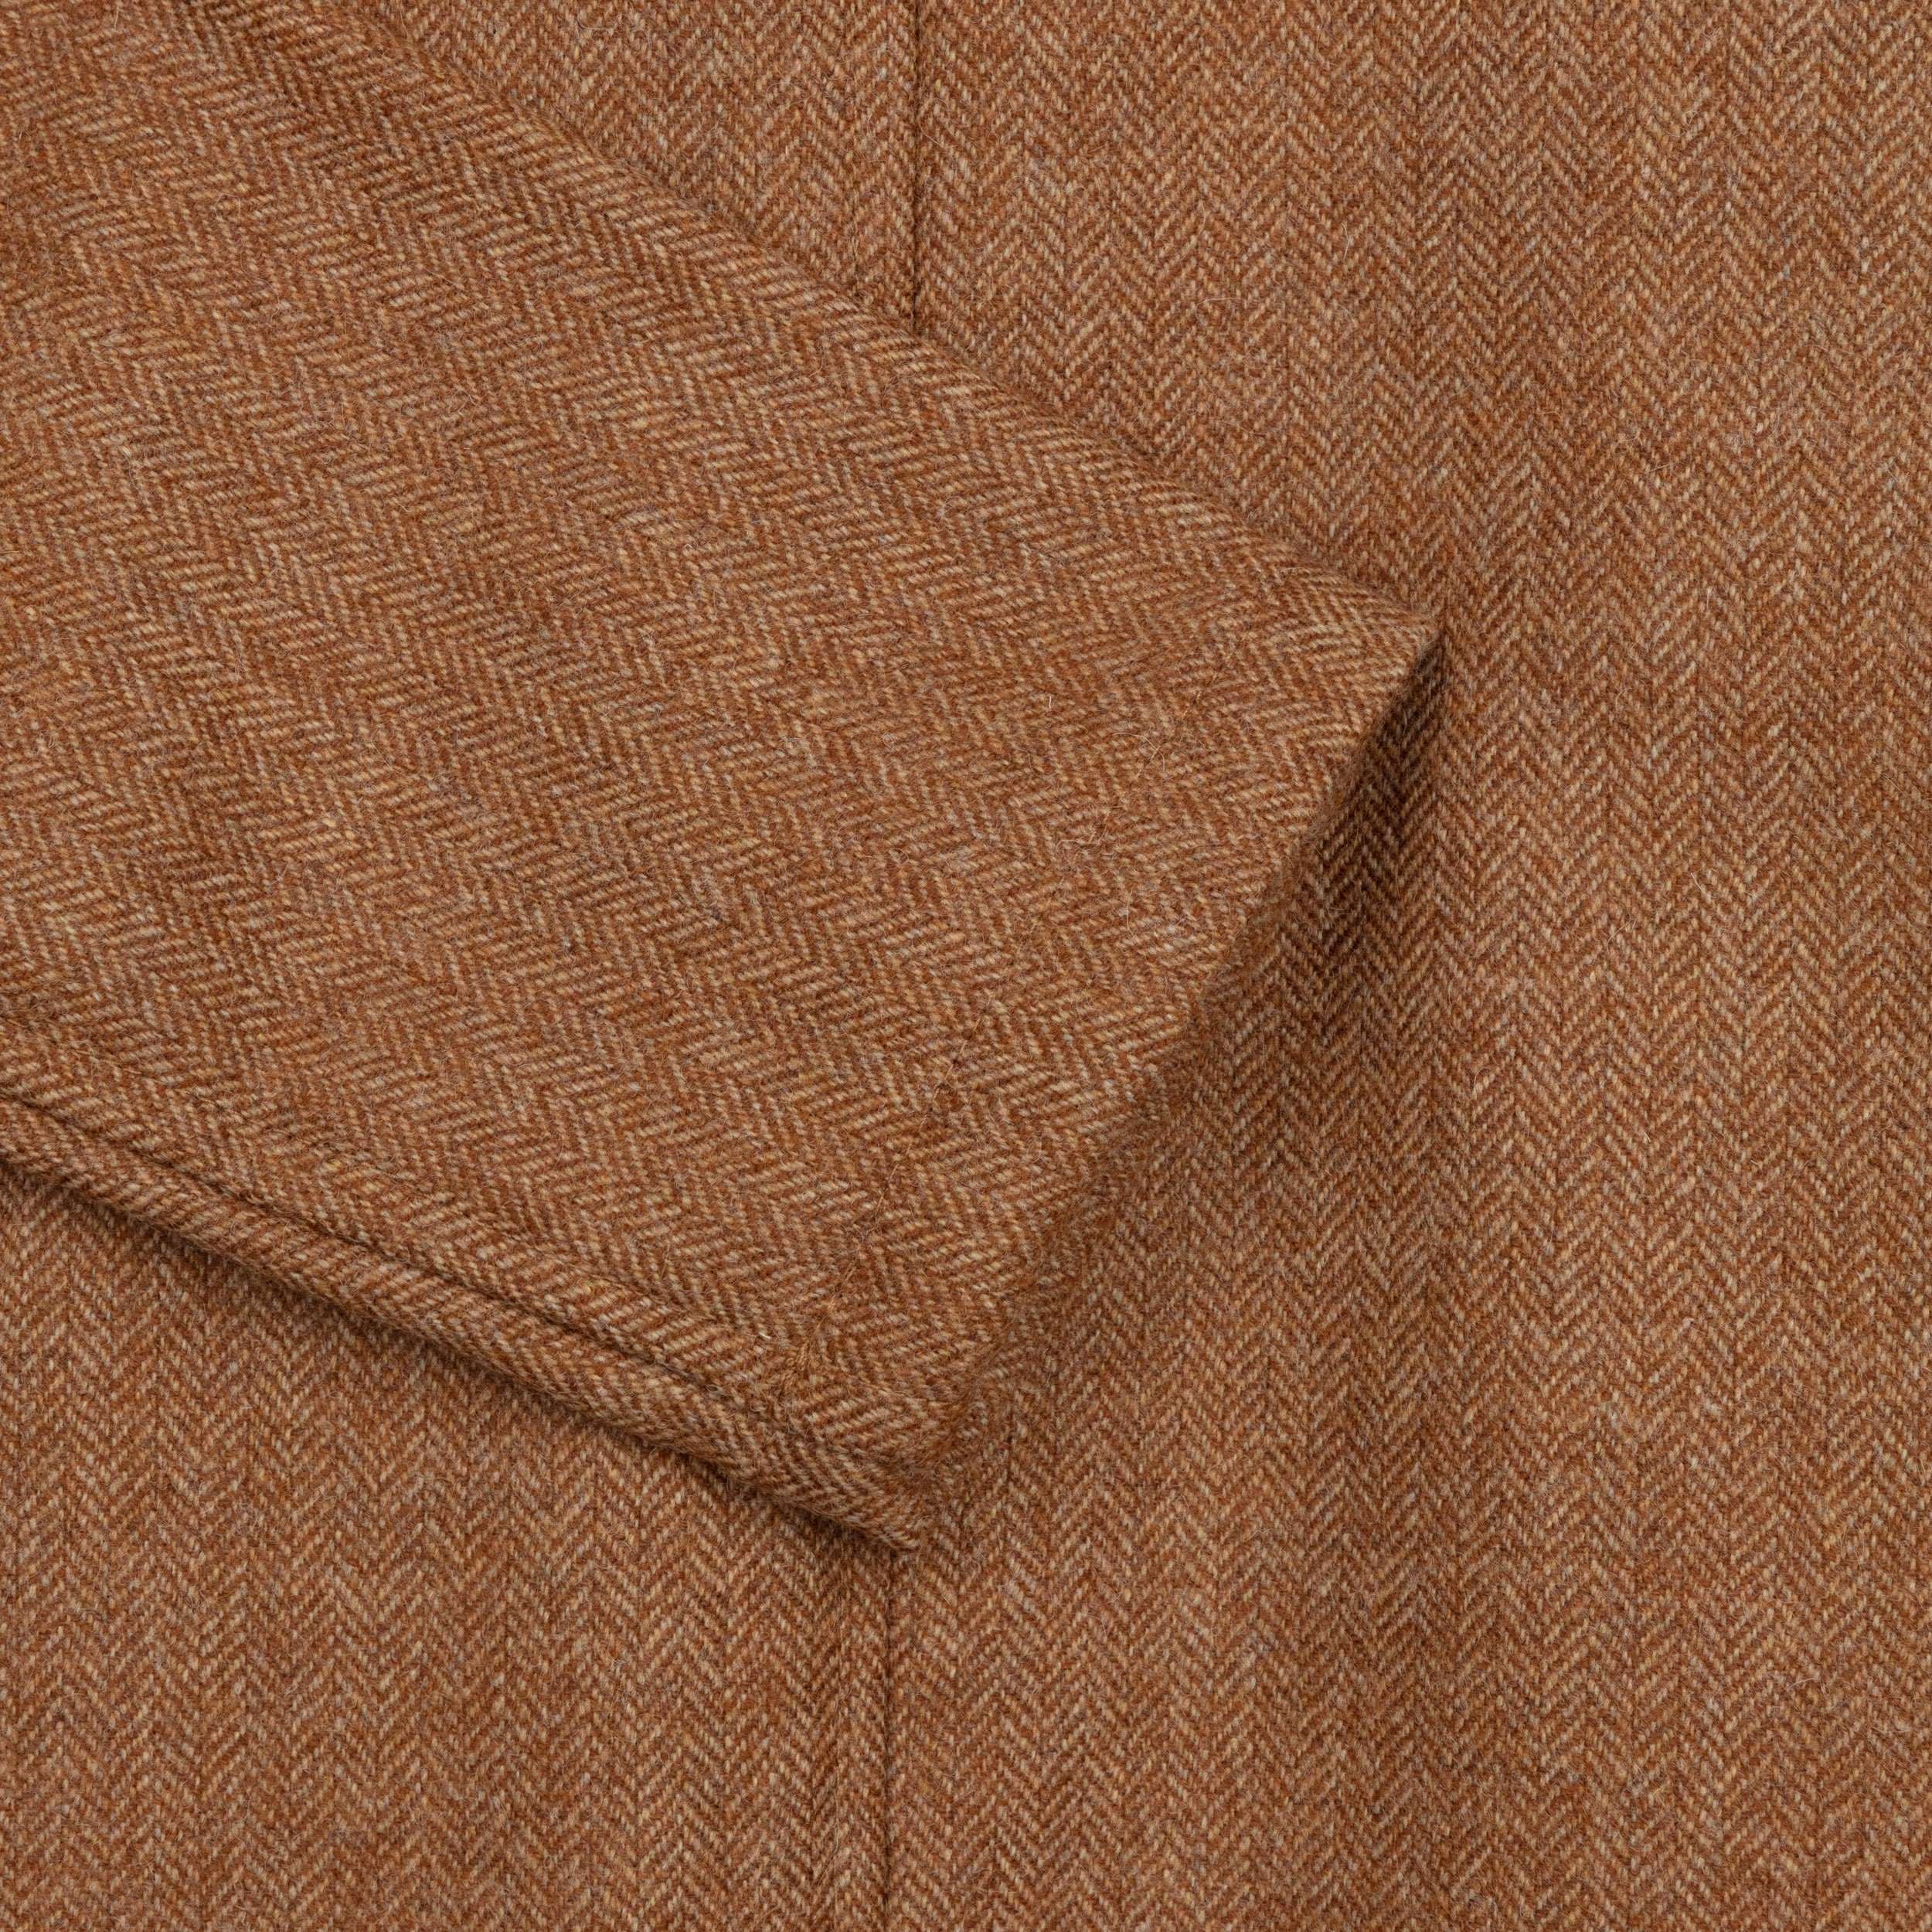 Carrier Company Tan Herringbone Wool Coat